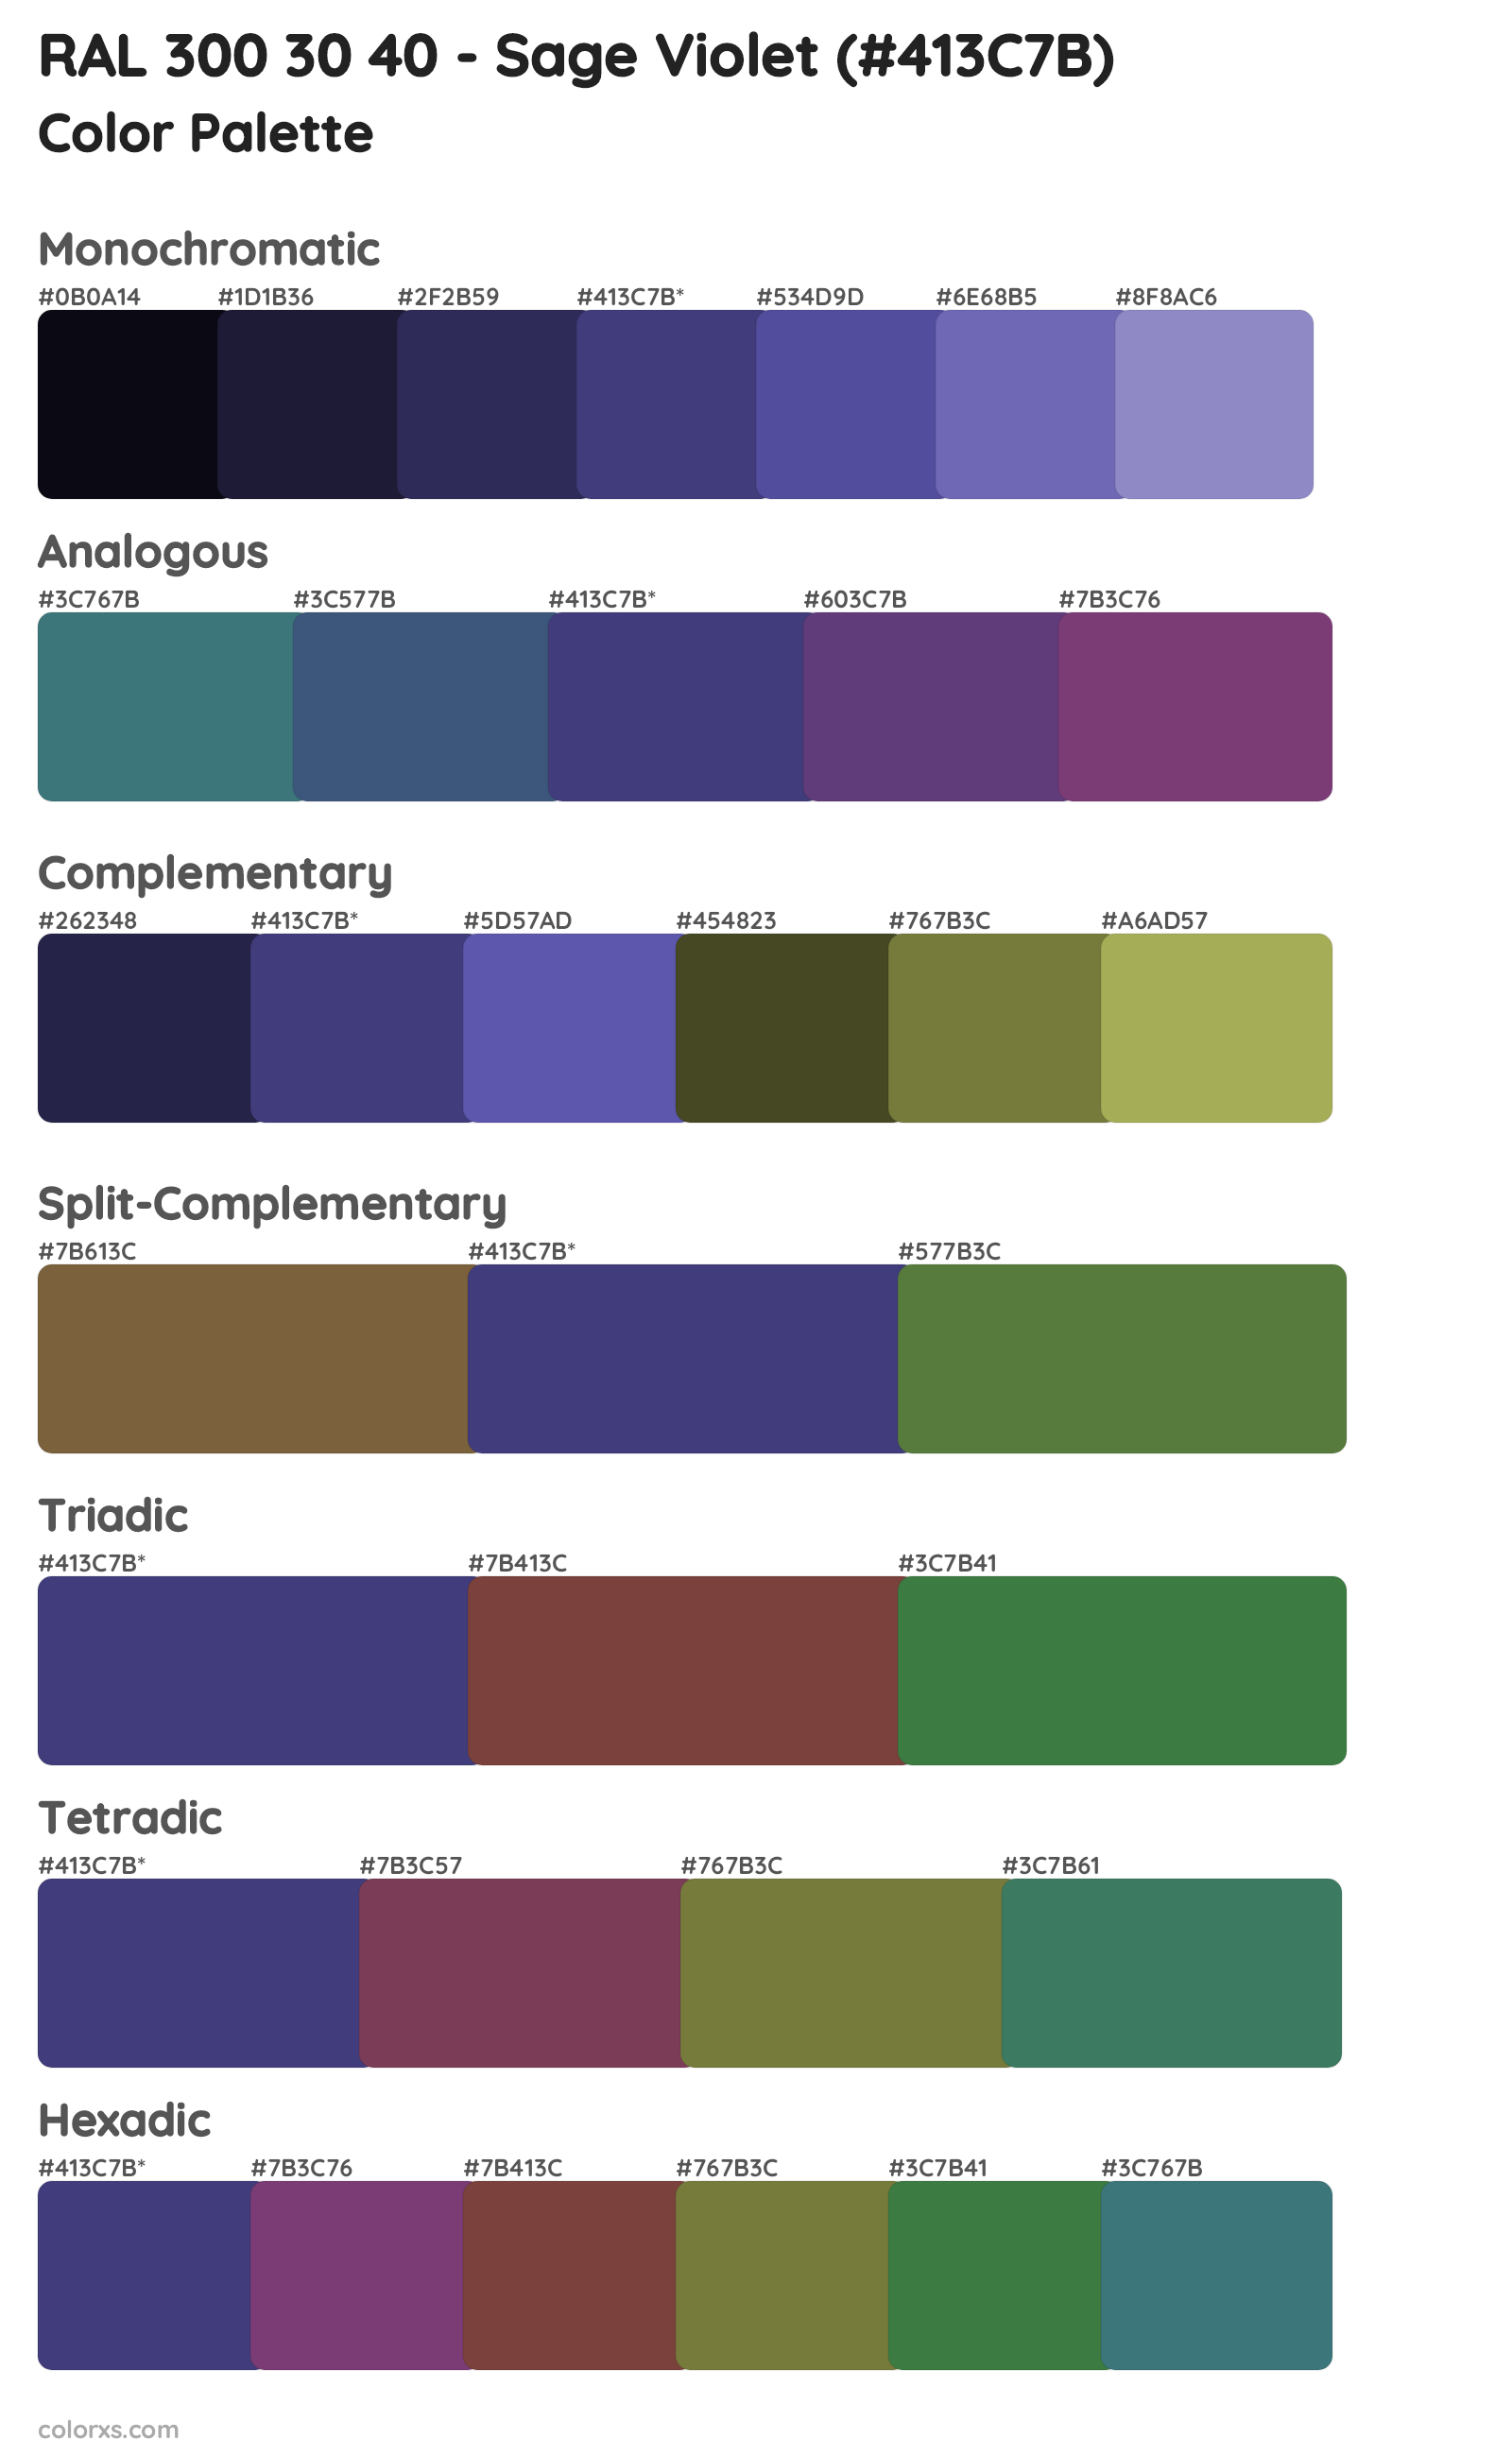 RAL 300 30 40 - Sage Violet Color Scheme Palettes